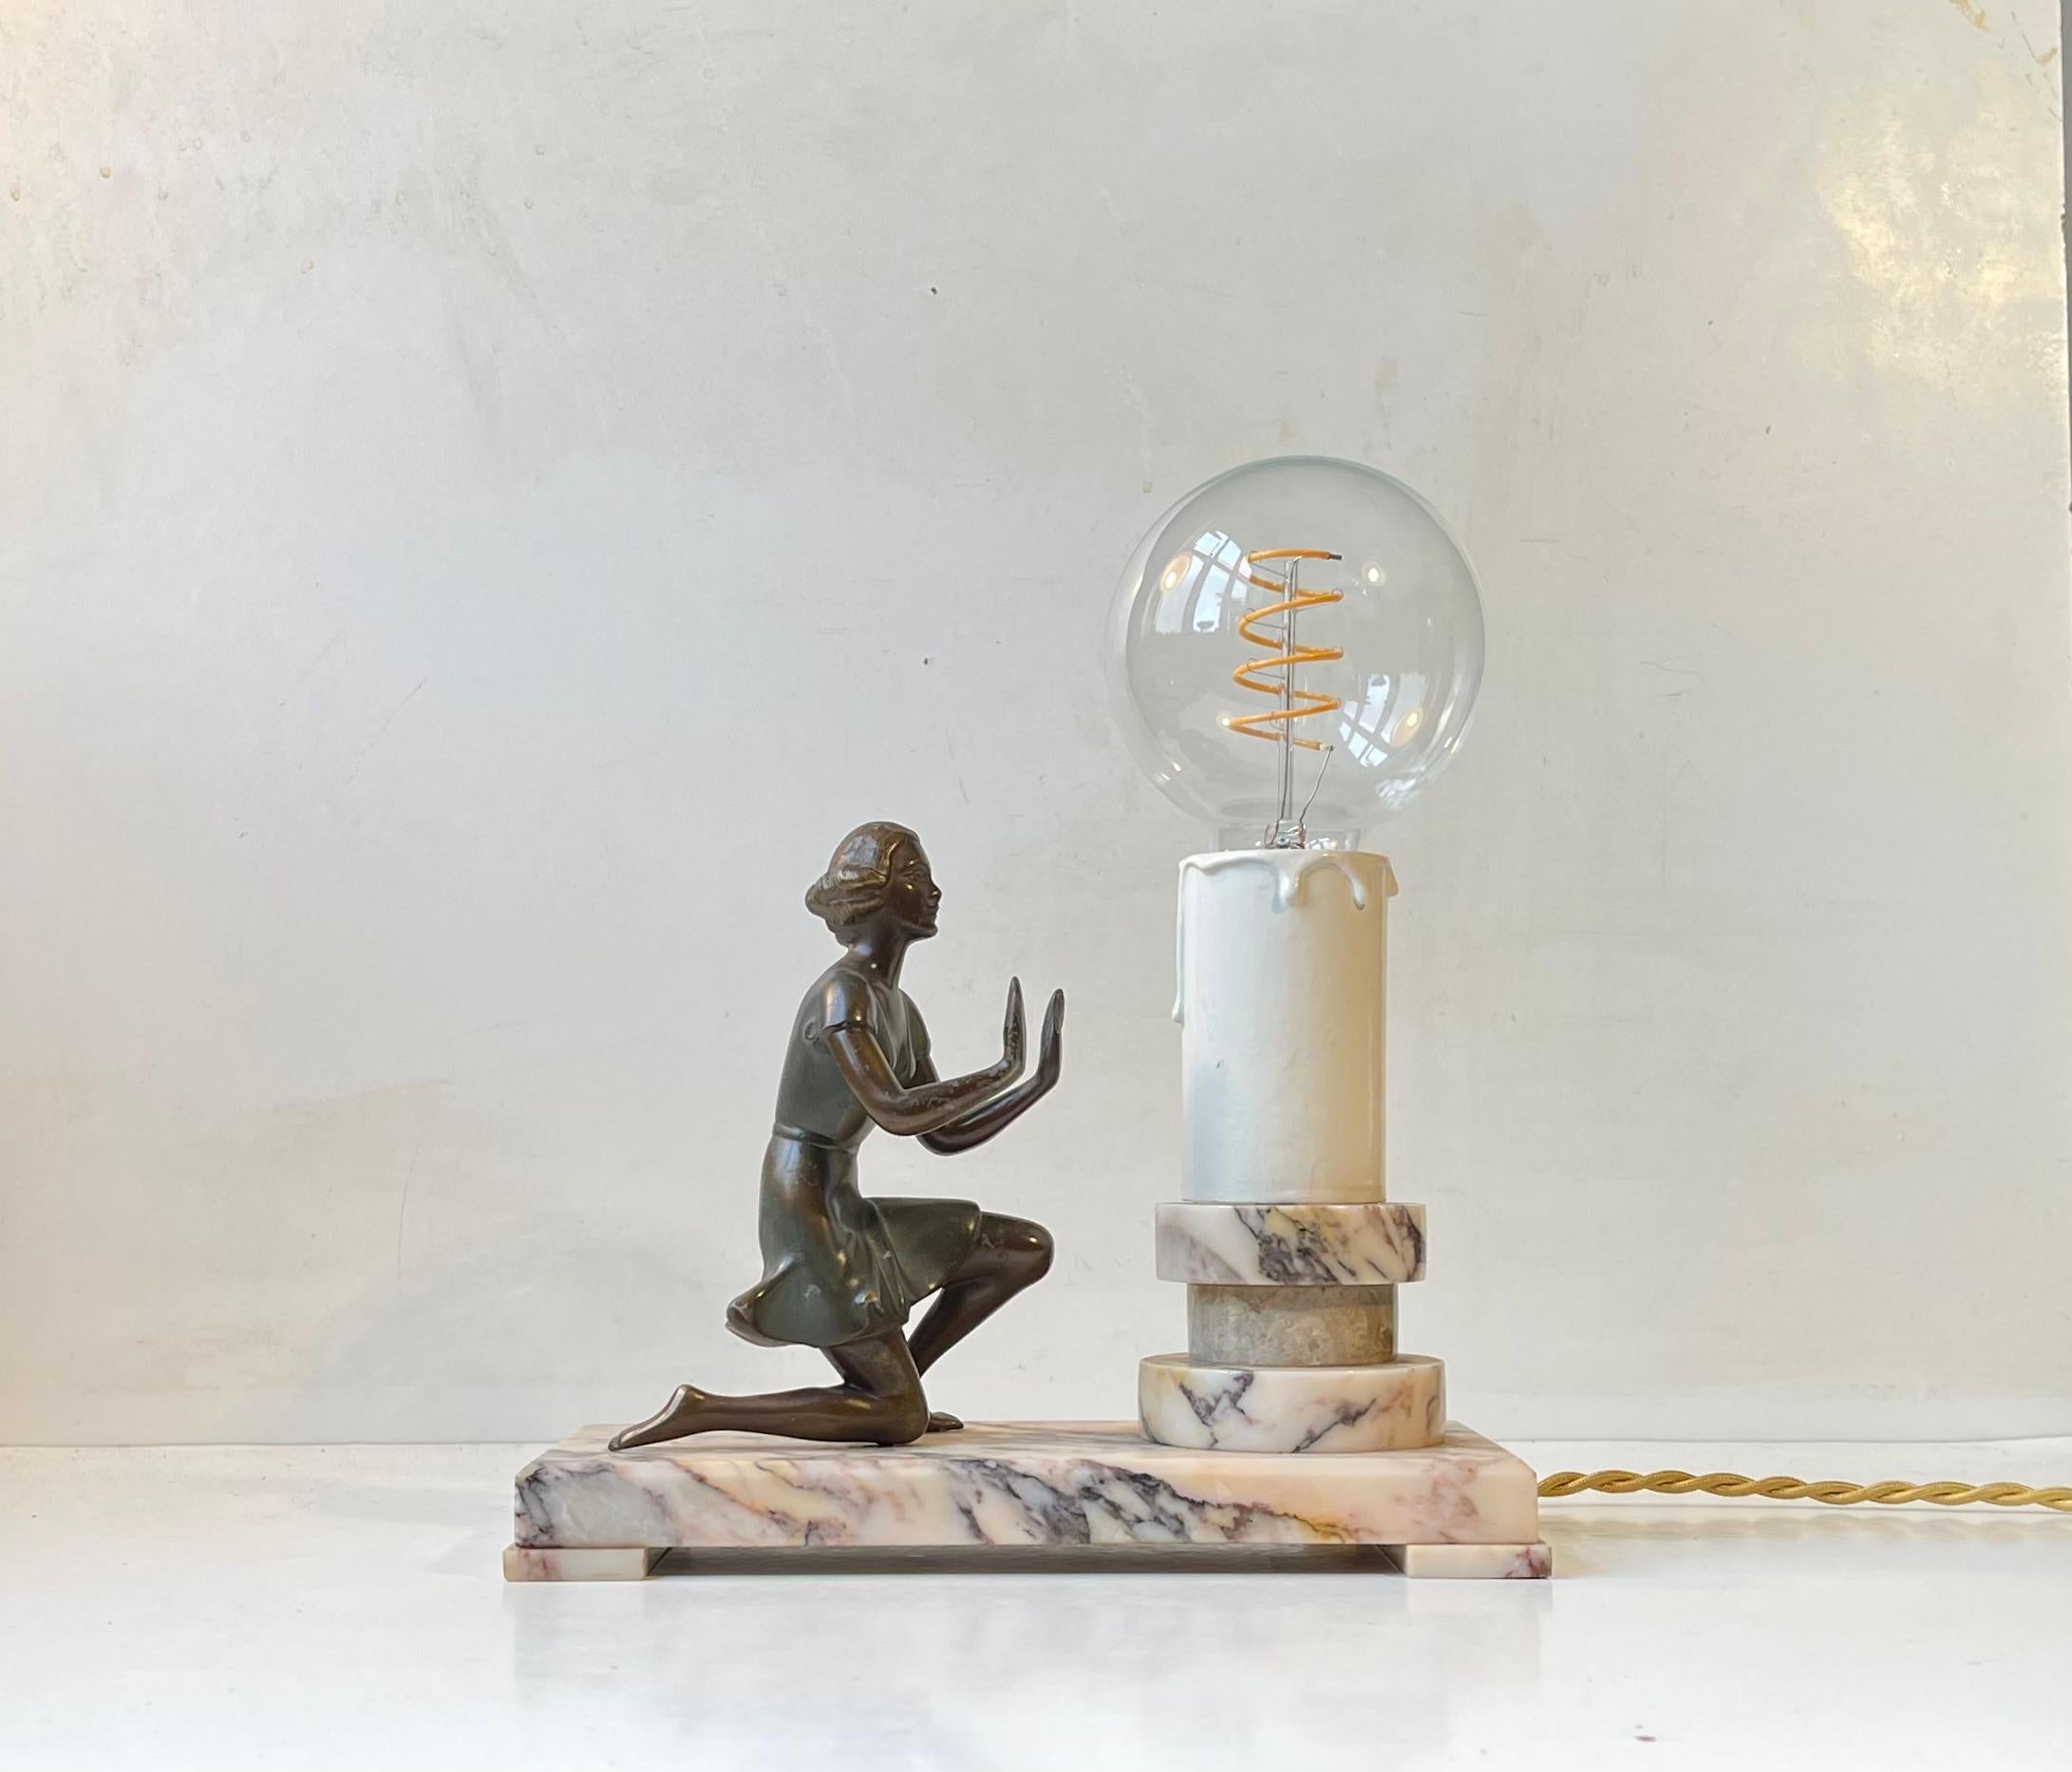 Lampe de table ornée d'une figurine, avec une base architecturale en marbre onyx, une fausse bougie stylisée et une sculpture/figurine en bronze qui se réchauffe les mains devant la 